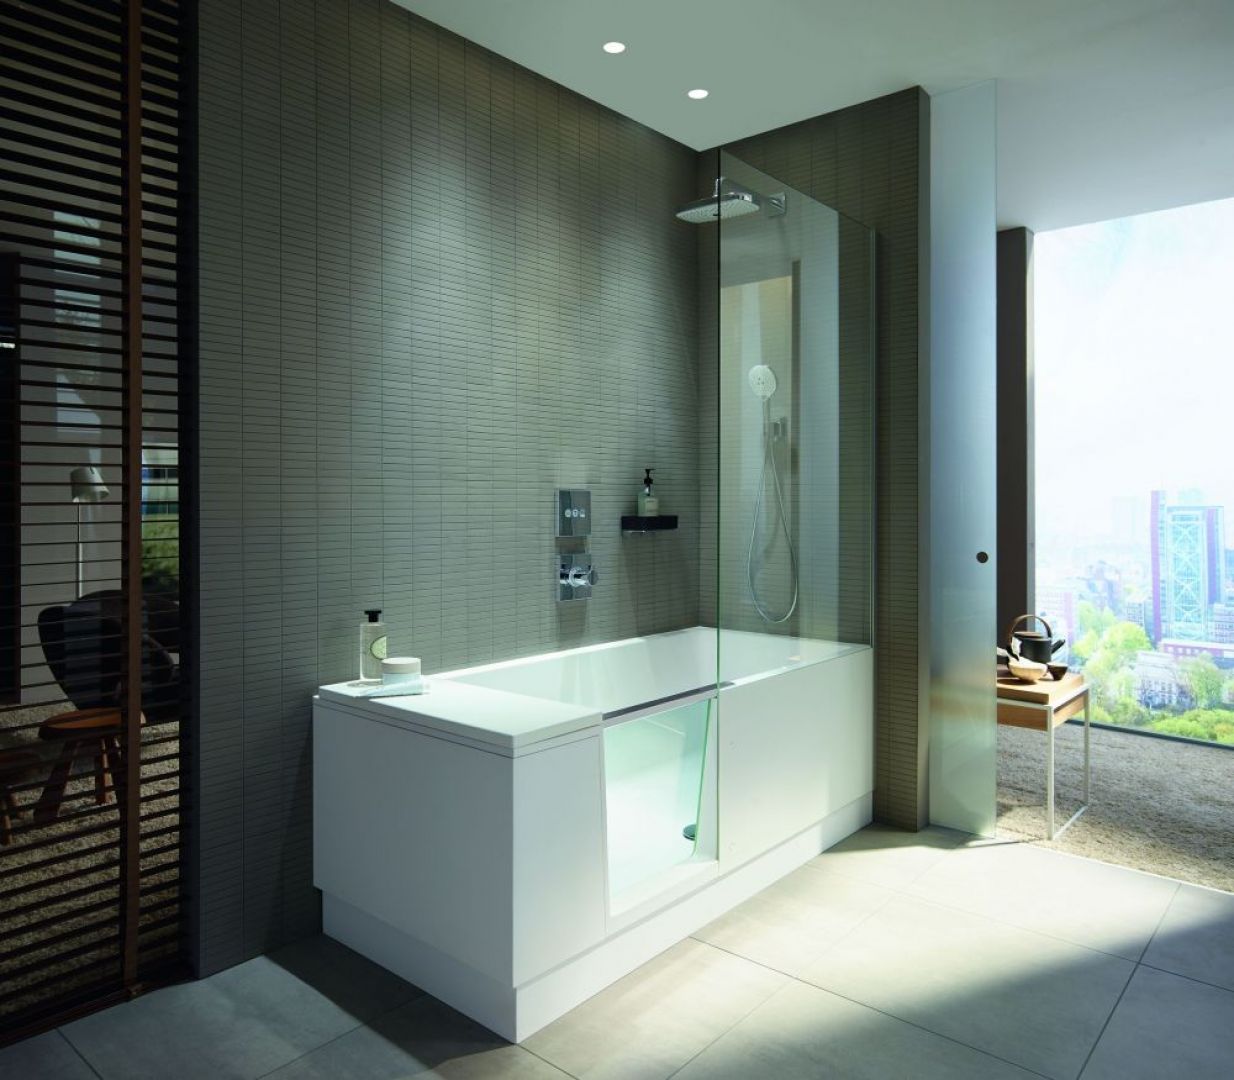 Shower&Bath projektu EOOS dla firmy Duravit, to połączenie prysznica typu walk–in z wanną. Zintegrowane szklane drzwi łatwo przekształcają wannę w dostępny, otwarty prysznic. Kiedy drzwi są otwarte do wewnątrz wanny, znikają pod wodoodpornym oparciem i pozostają niewidoczne. Fot. Duravit